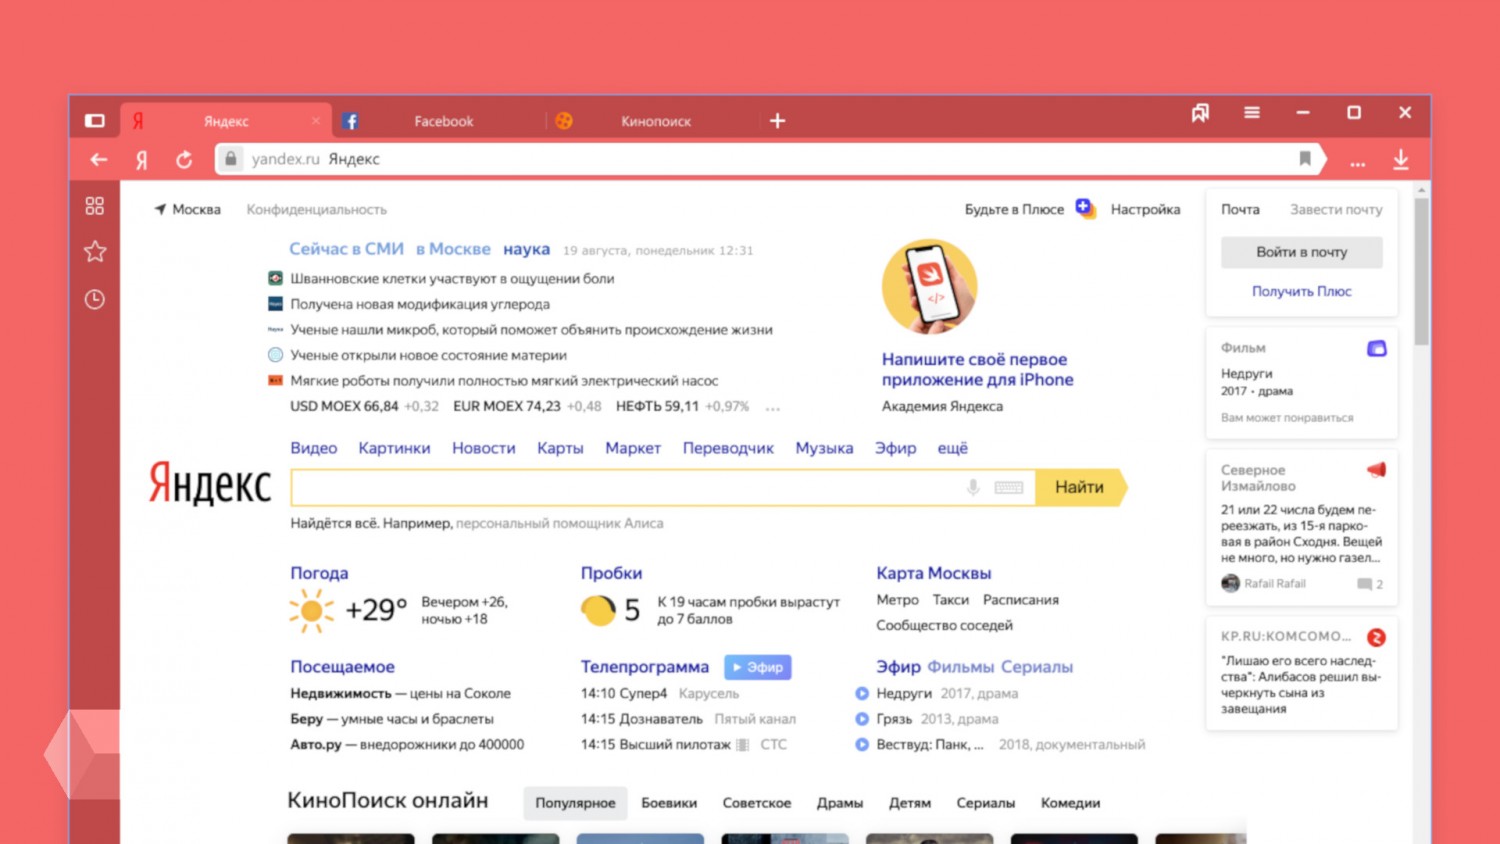 Интерфейс «Яндекс.Браузера» теперь можно перекрасить в один из 28 цветов